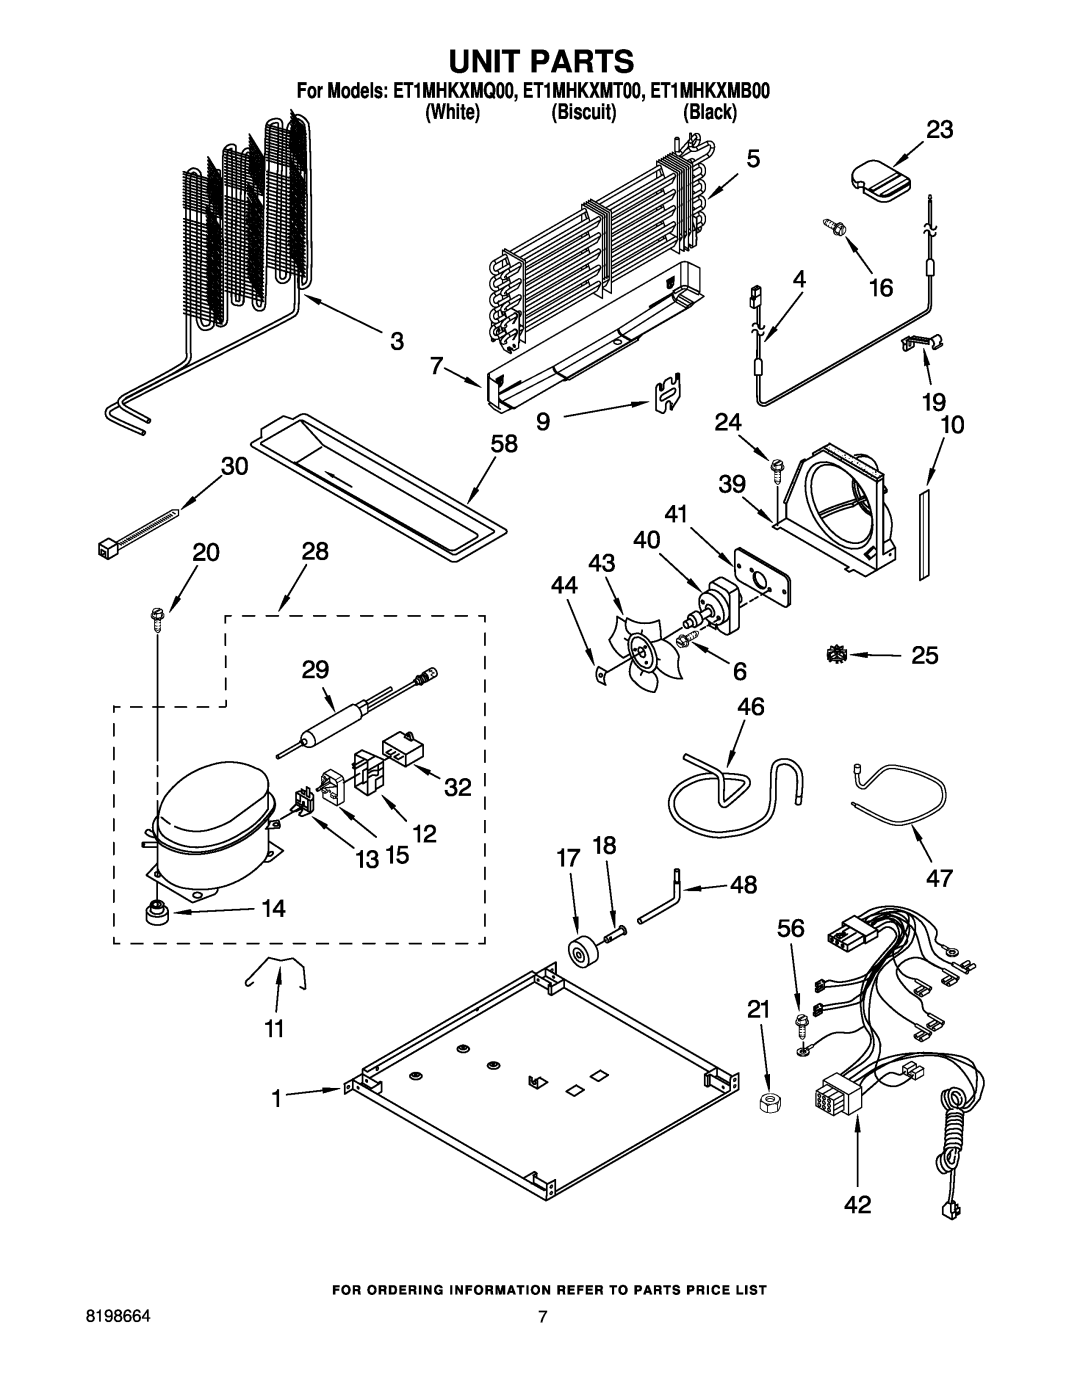 Whirlpool manual Unit Parts, For Models ET1MHKXMQ00, ET1MHKXMT00, ET1MHKXMB00 White Biscuit Black 